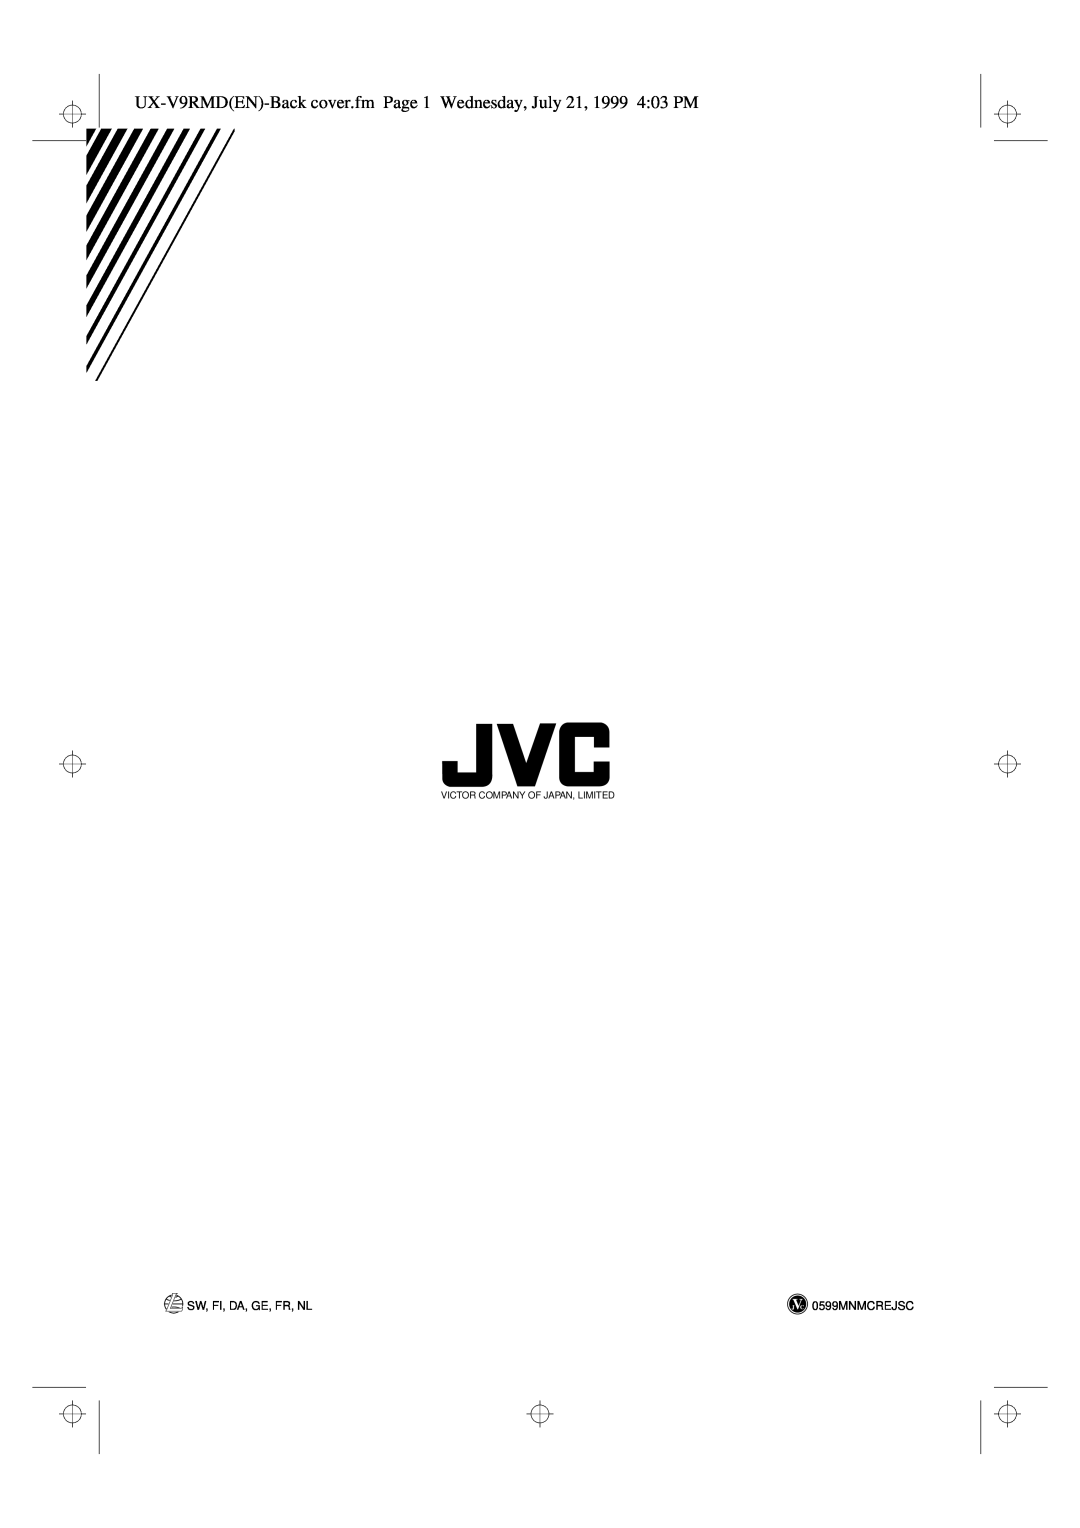 JVC UX-V9RMD manual Sw, Fi, Da, Ge, Fr, Nl, 0599MNMCREJSC, Victor Company Of Japan, Limited 